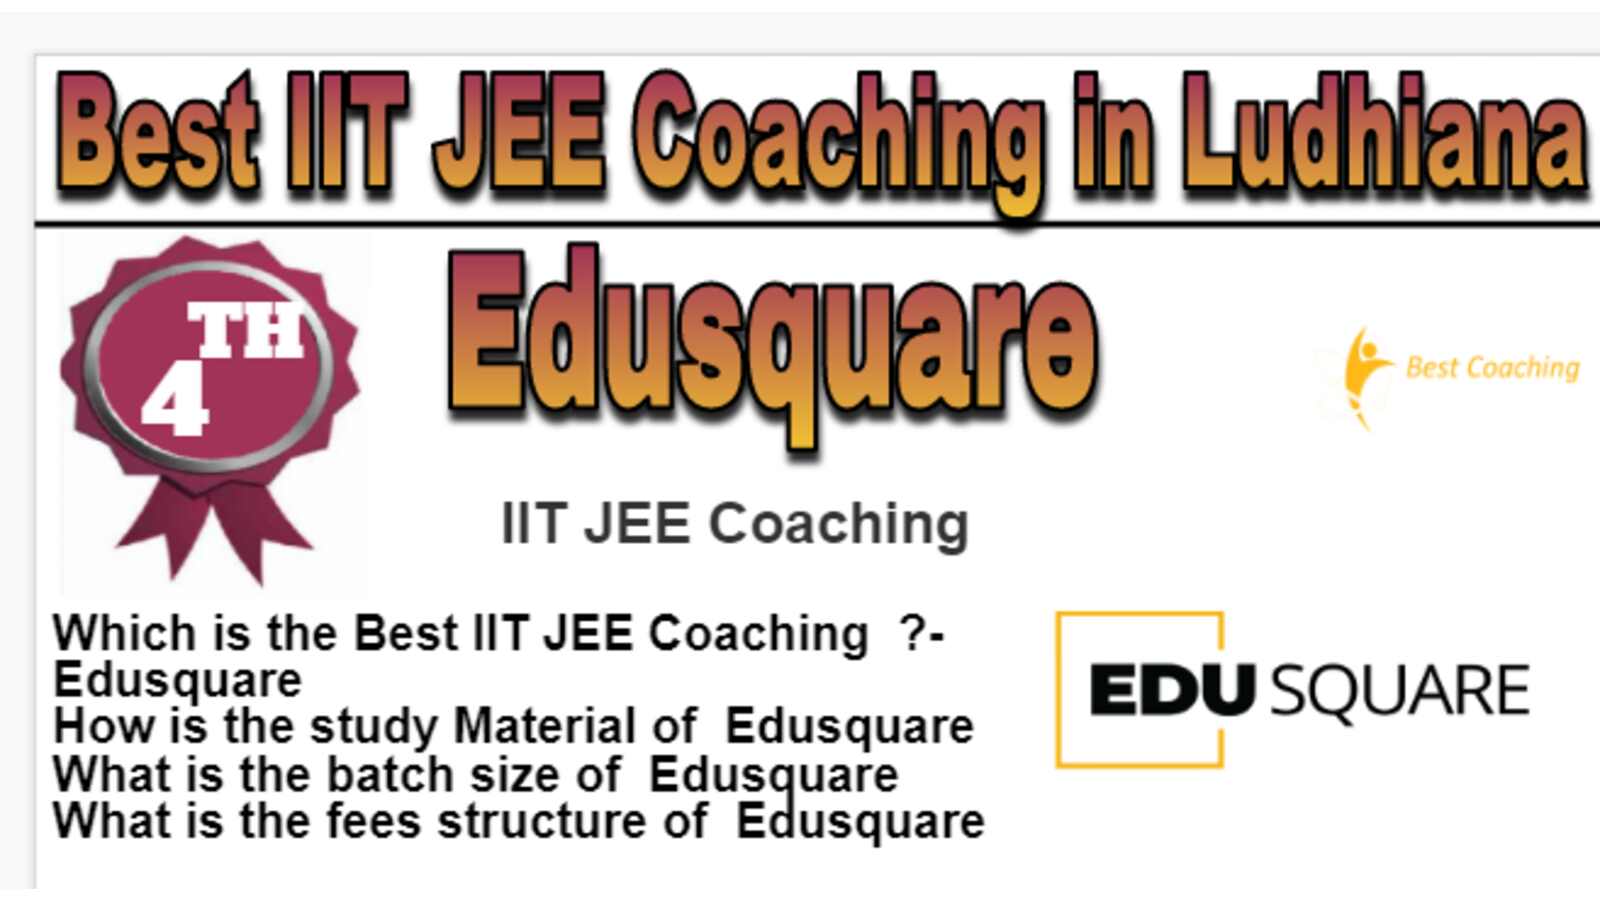 Rank 4 Best IIT JEE Coaching in Ludhiana